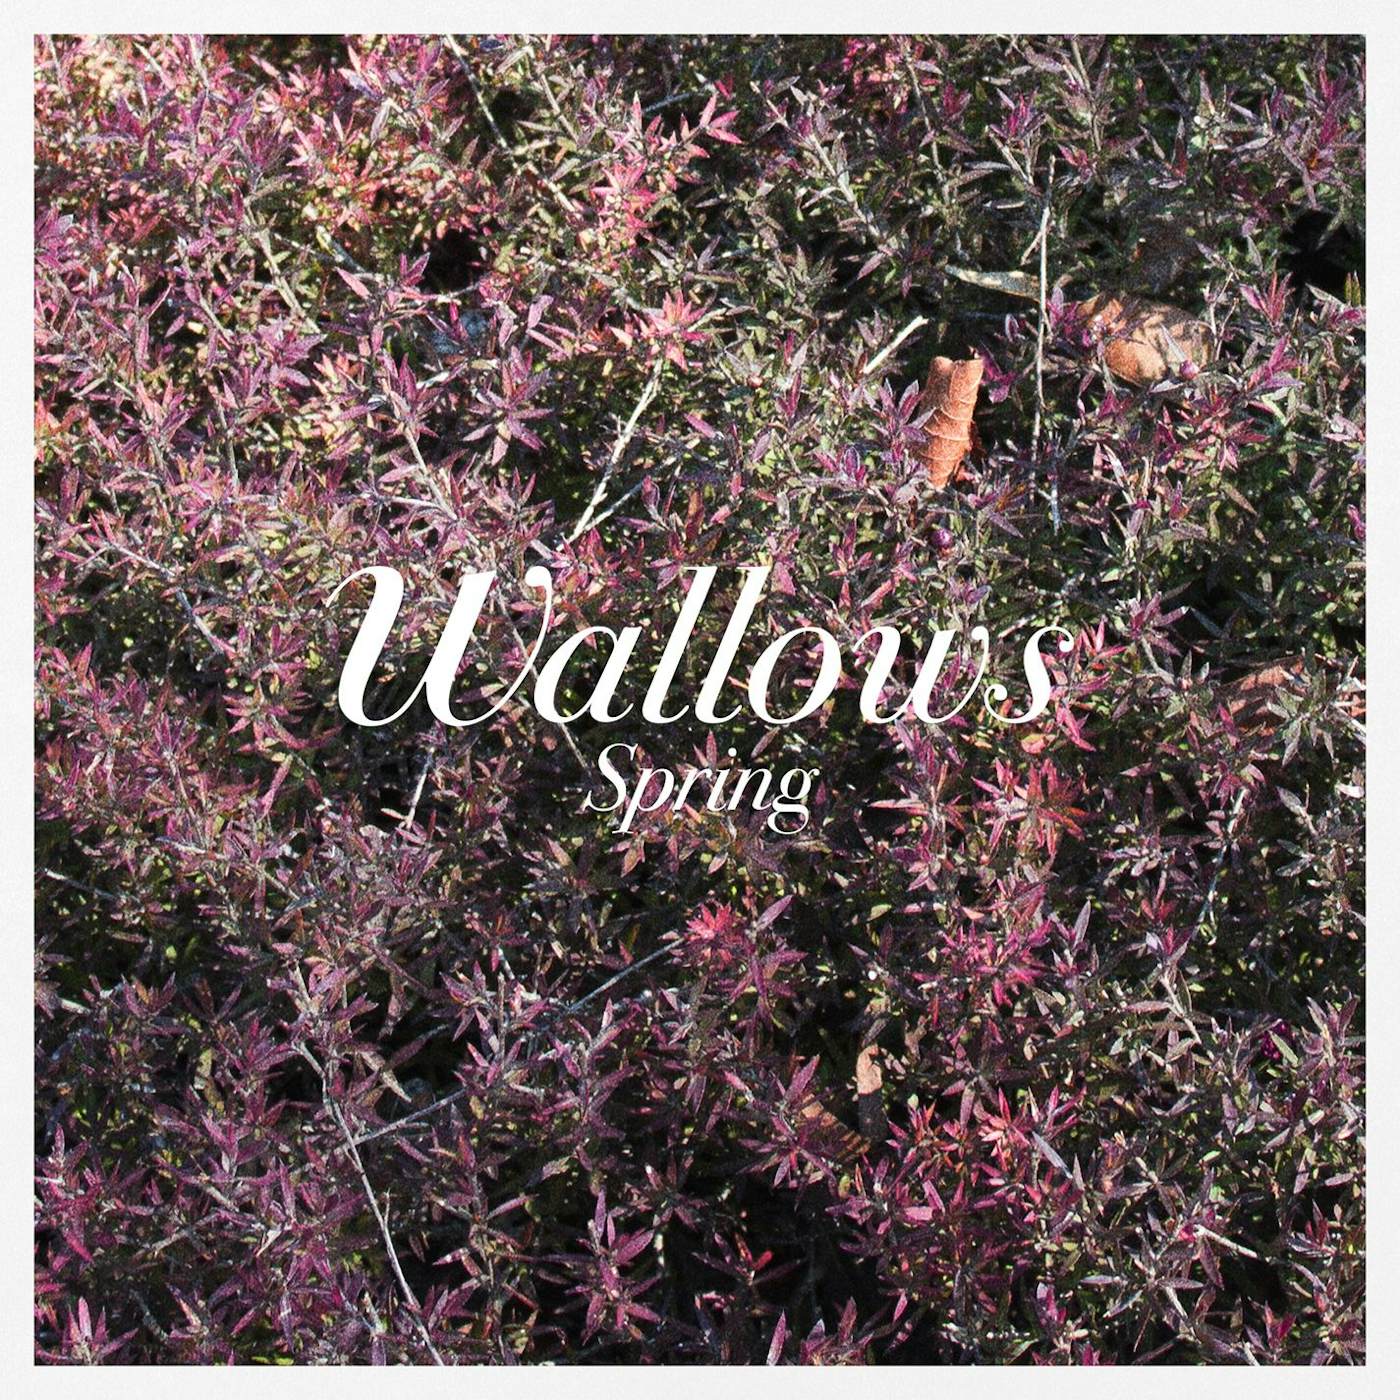 Wallows Spring Vinyl Record